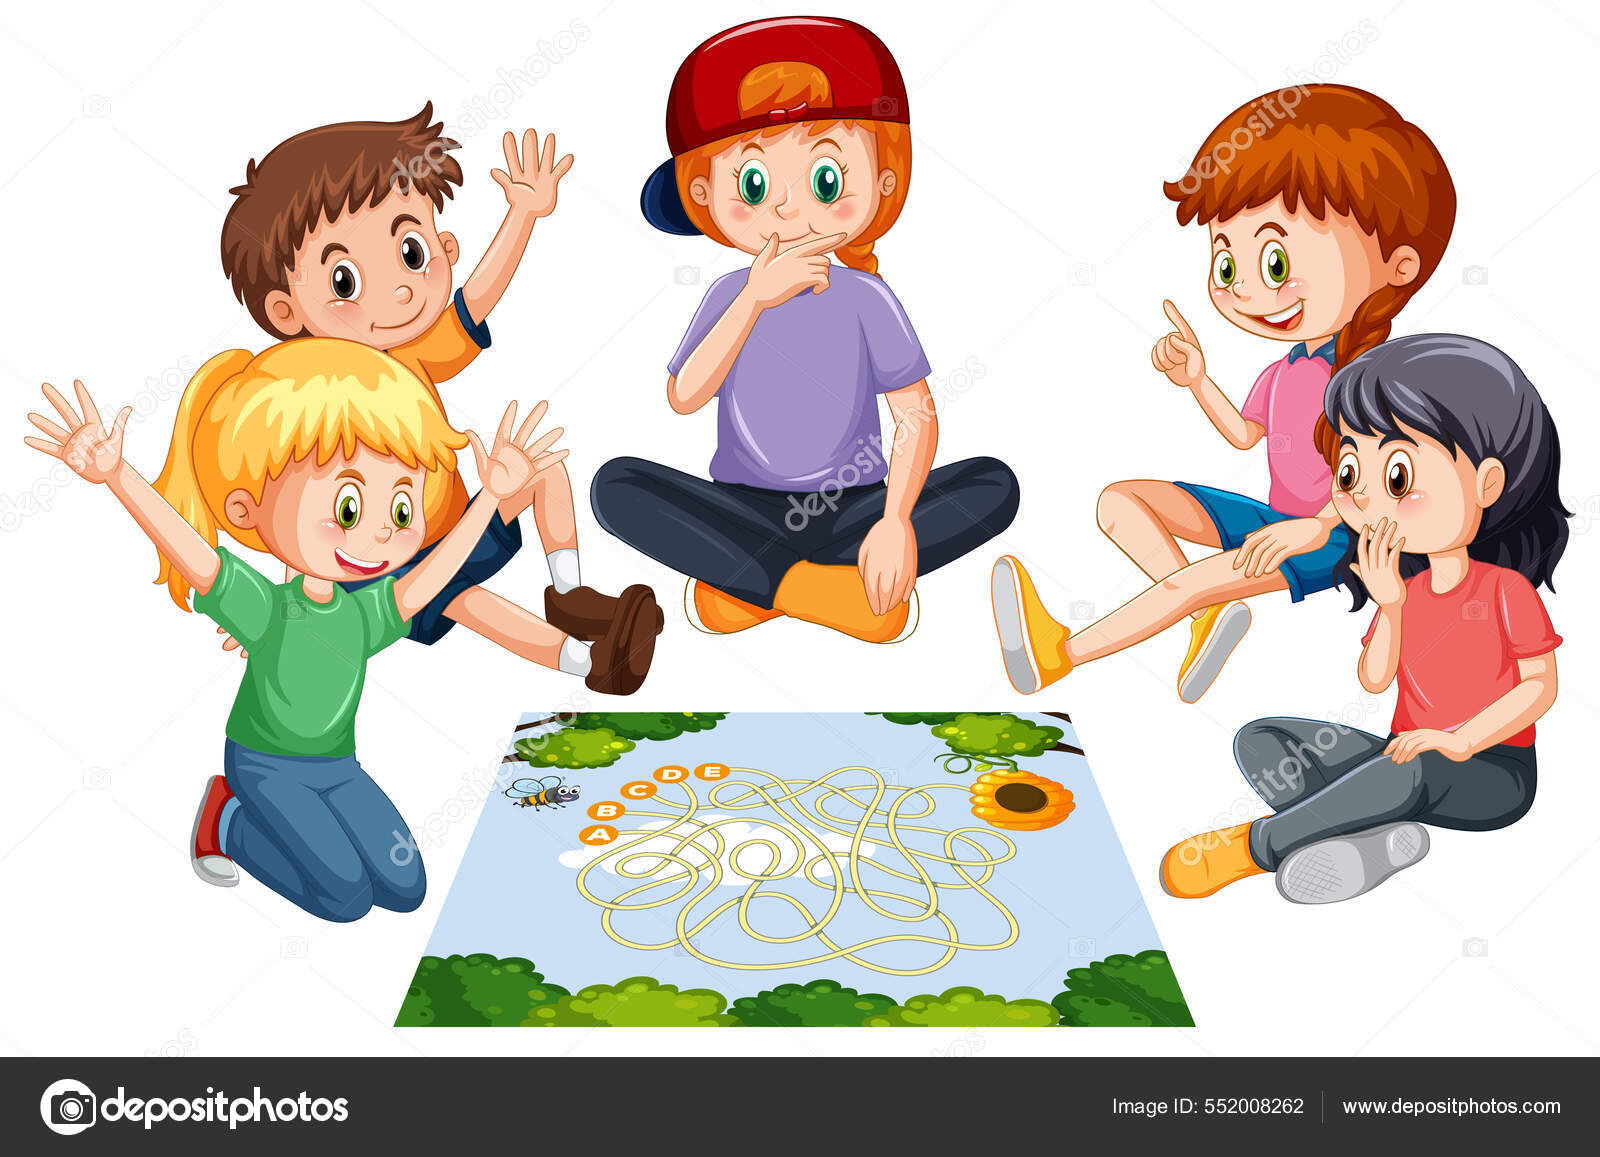 60+ Crianças Jogando Jogo Queimada Ilustração de stock, gráficos vetoriais  e clipart royalty-free - iStock